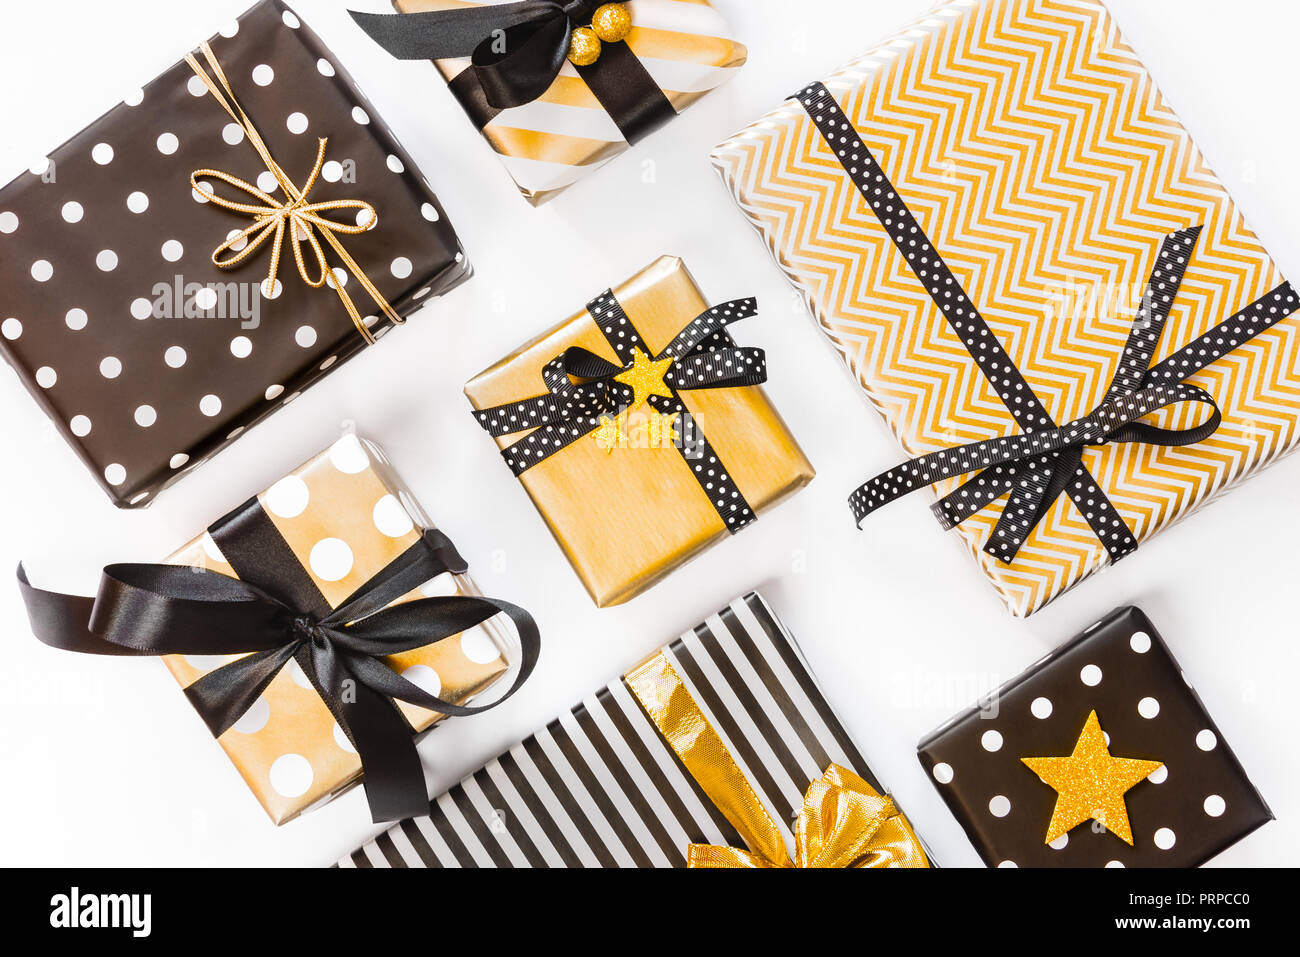 Vue de dessus de boîtes-cadeaux dans différents coloris noir, blanc et doré. Mise à plat. Un concept de Noël, Nouvel An, fête l'événement. Banque D'Images